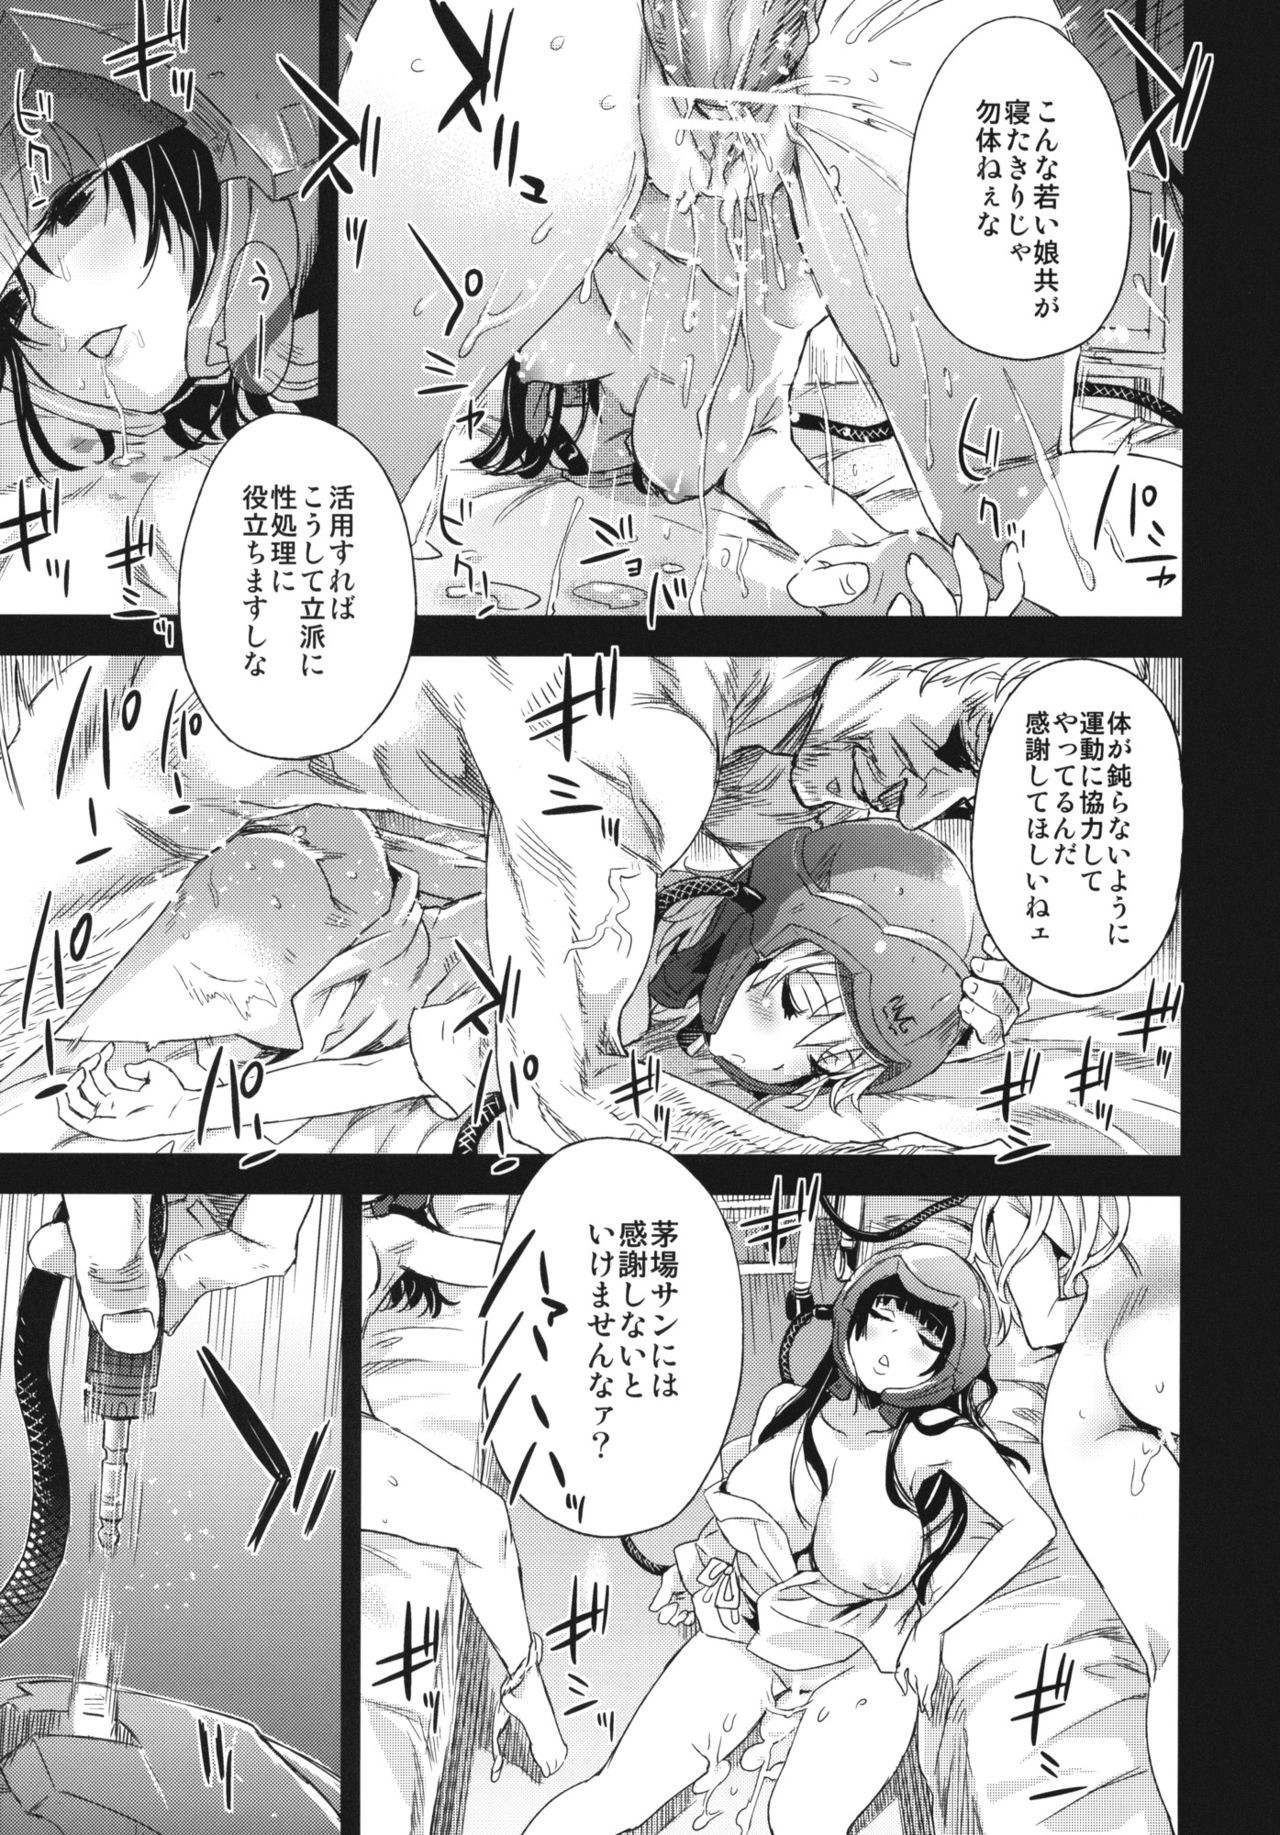 Victim Girls 14 - Sleeping Beauties hentai manga picture 5